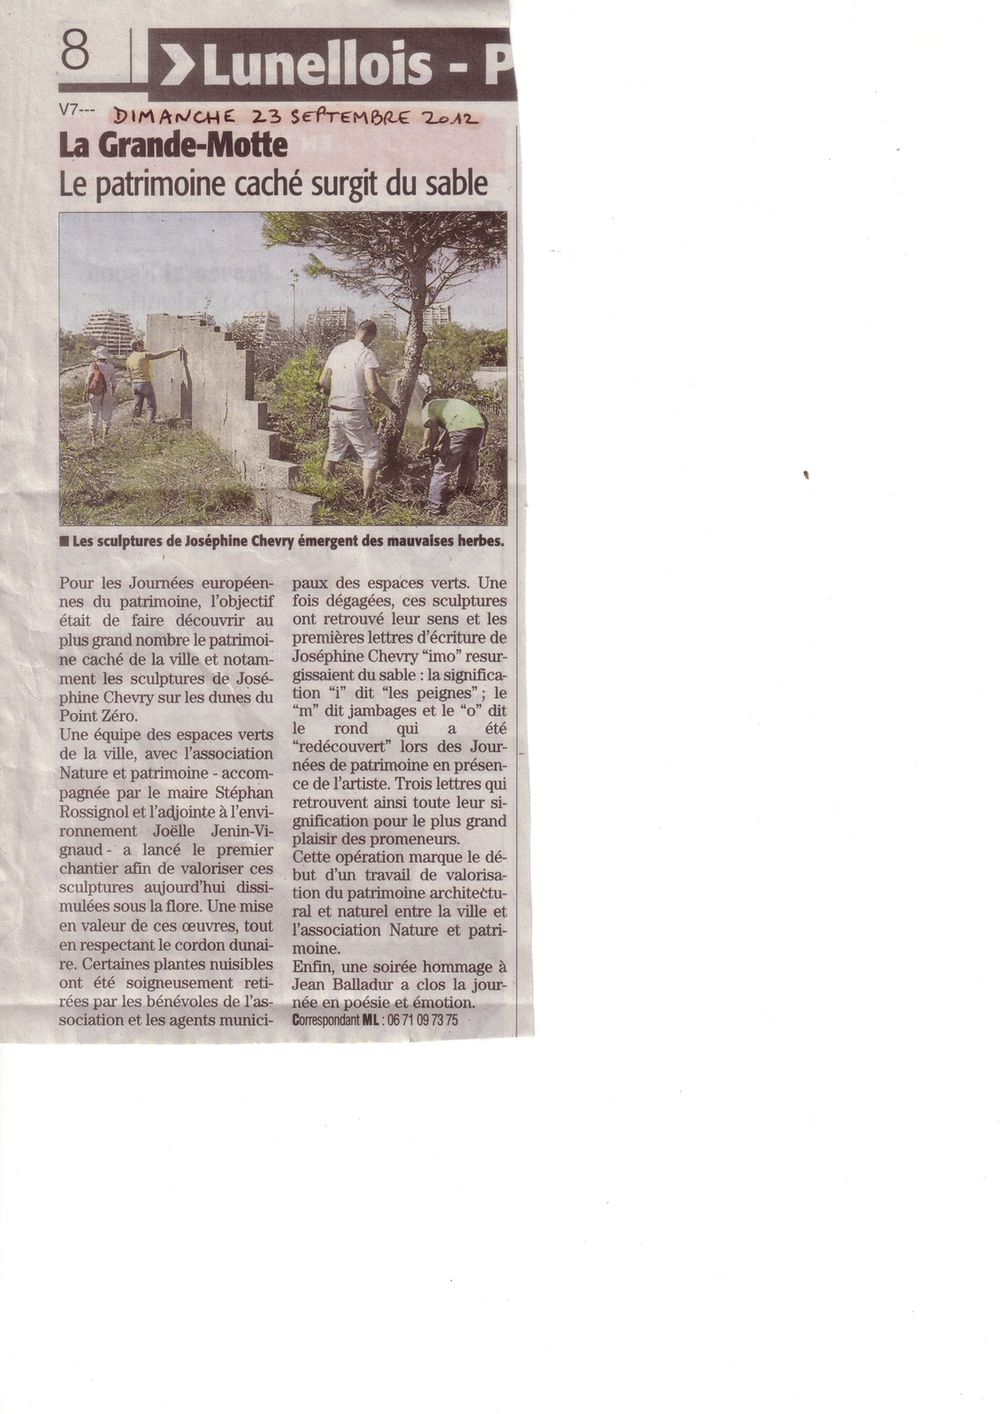 Article LGM Midi Libre 23-09-2012 JPEG